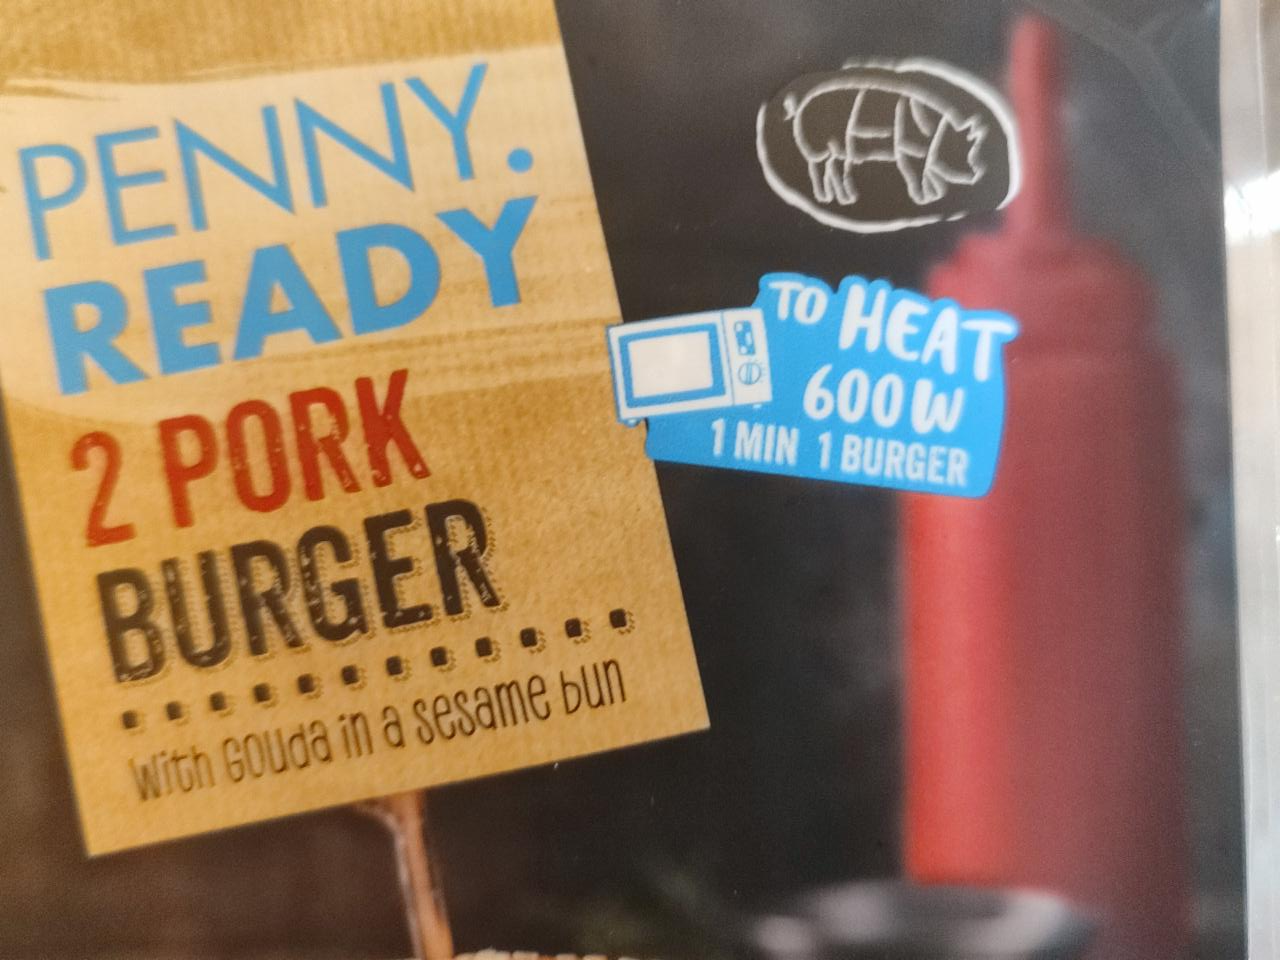 Képek - 2 pork burger Penny Ready